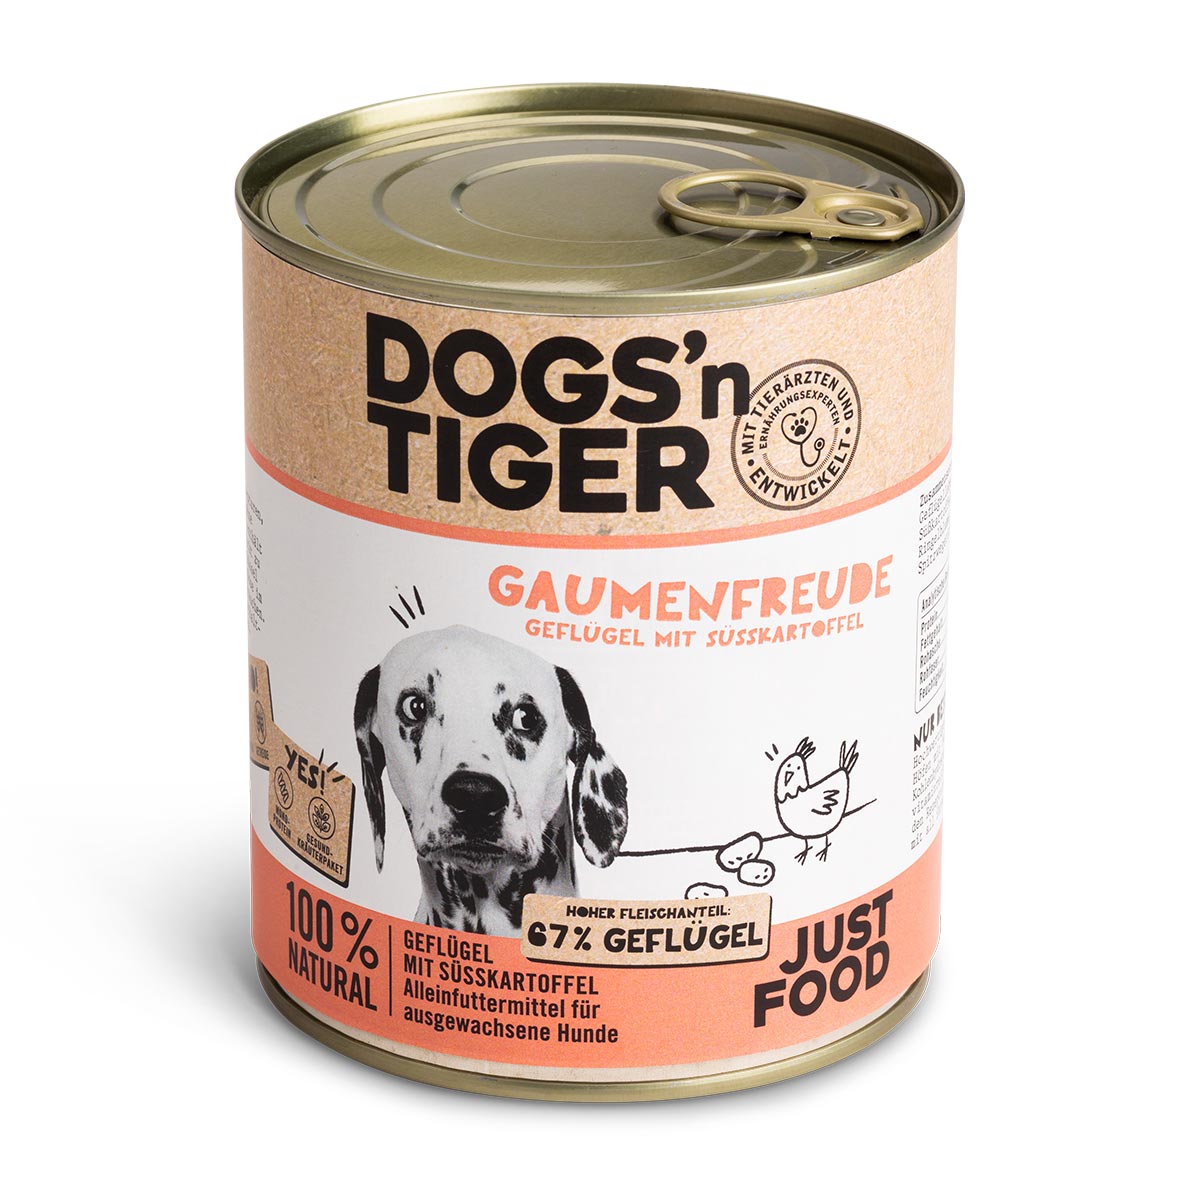 Dogs'n Tiger Gaumenfreude Nassfutter Geflügel mit Süßkartoffel 6x800g